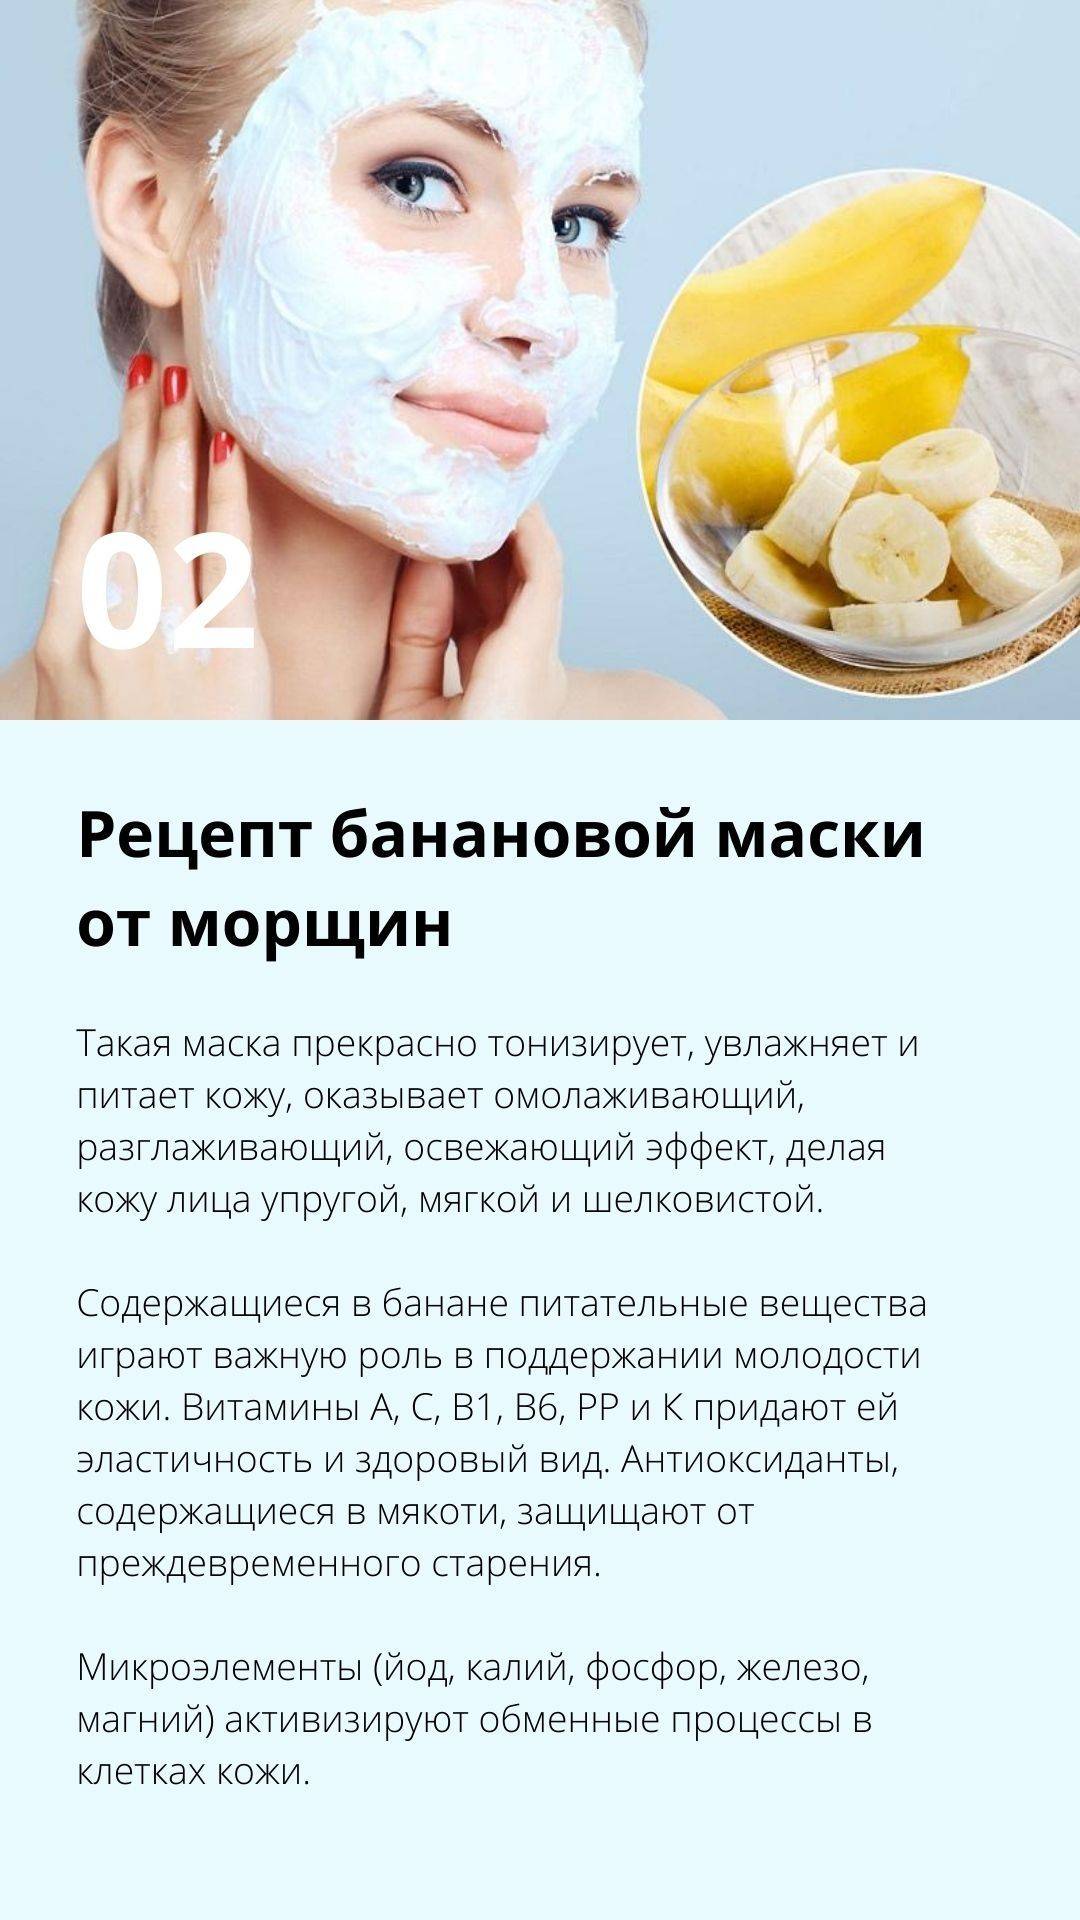 Луковая маска для волос против выпадения рецепты с лопухом, медом, лимоном отзывы